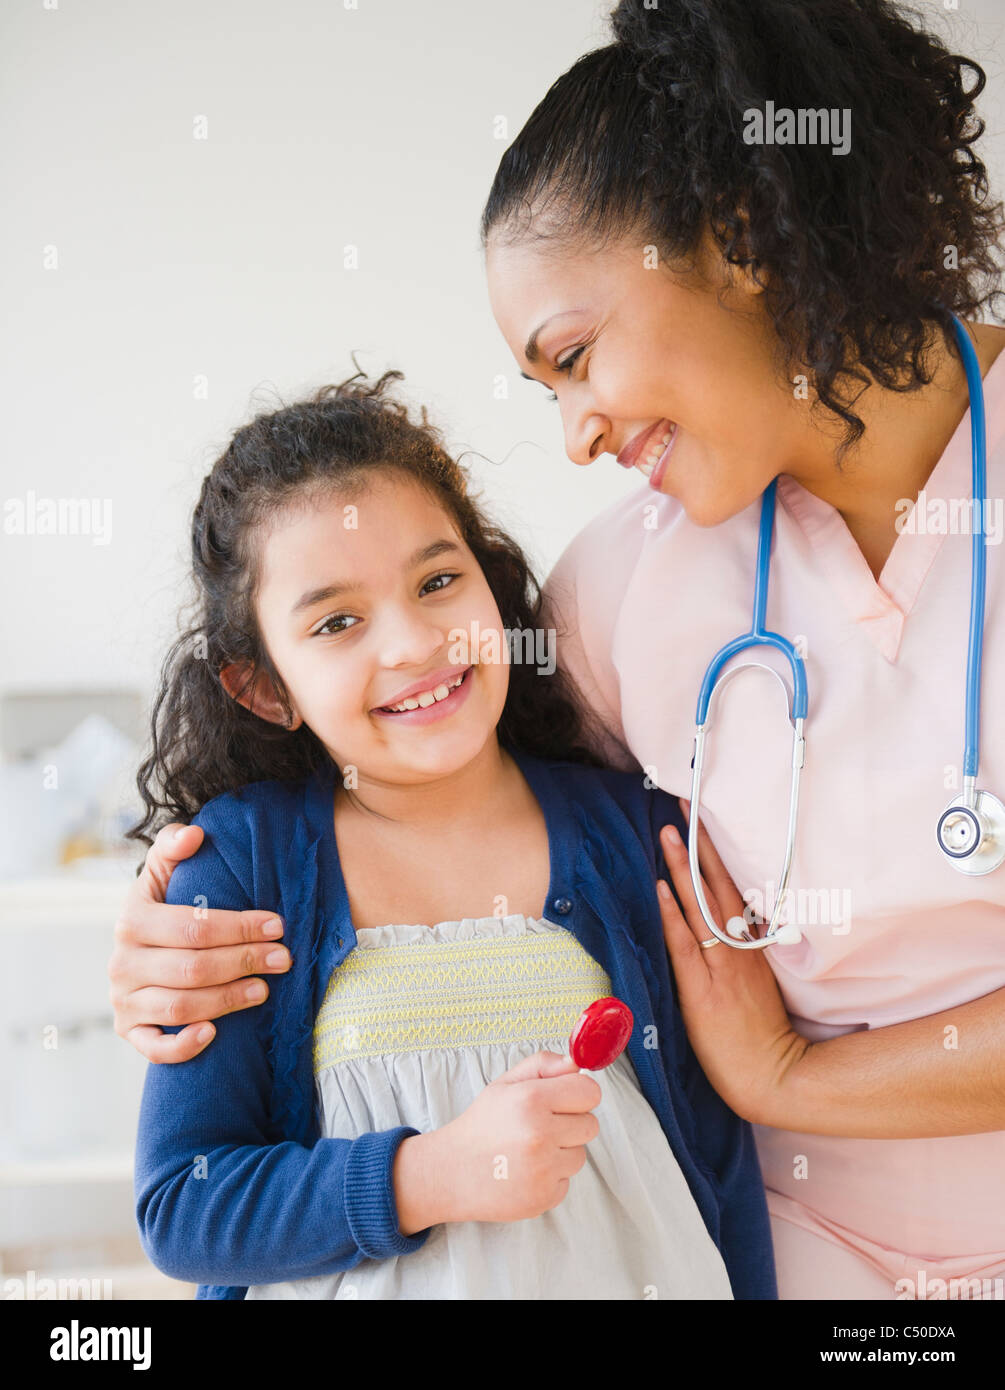 Lächelnde Krankenschwester geben Mädchen Lutscher Stockfoto